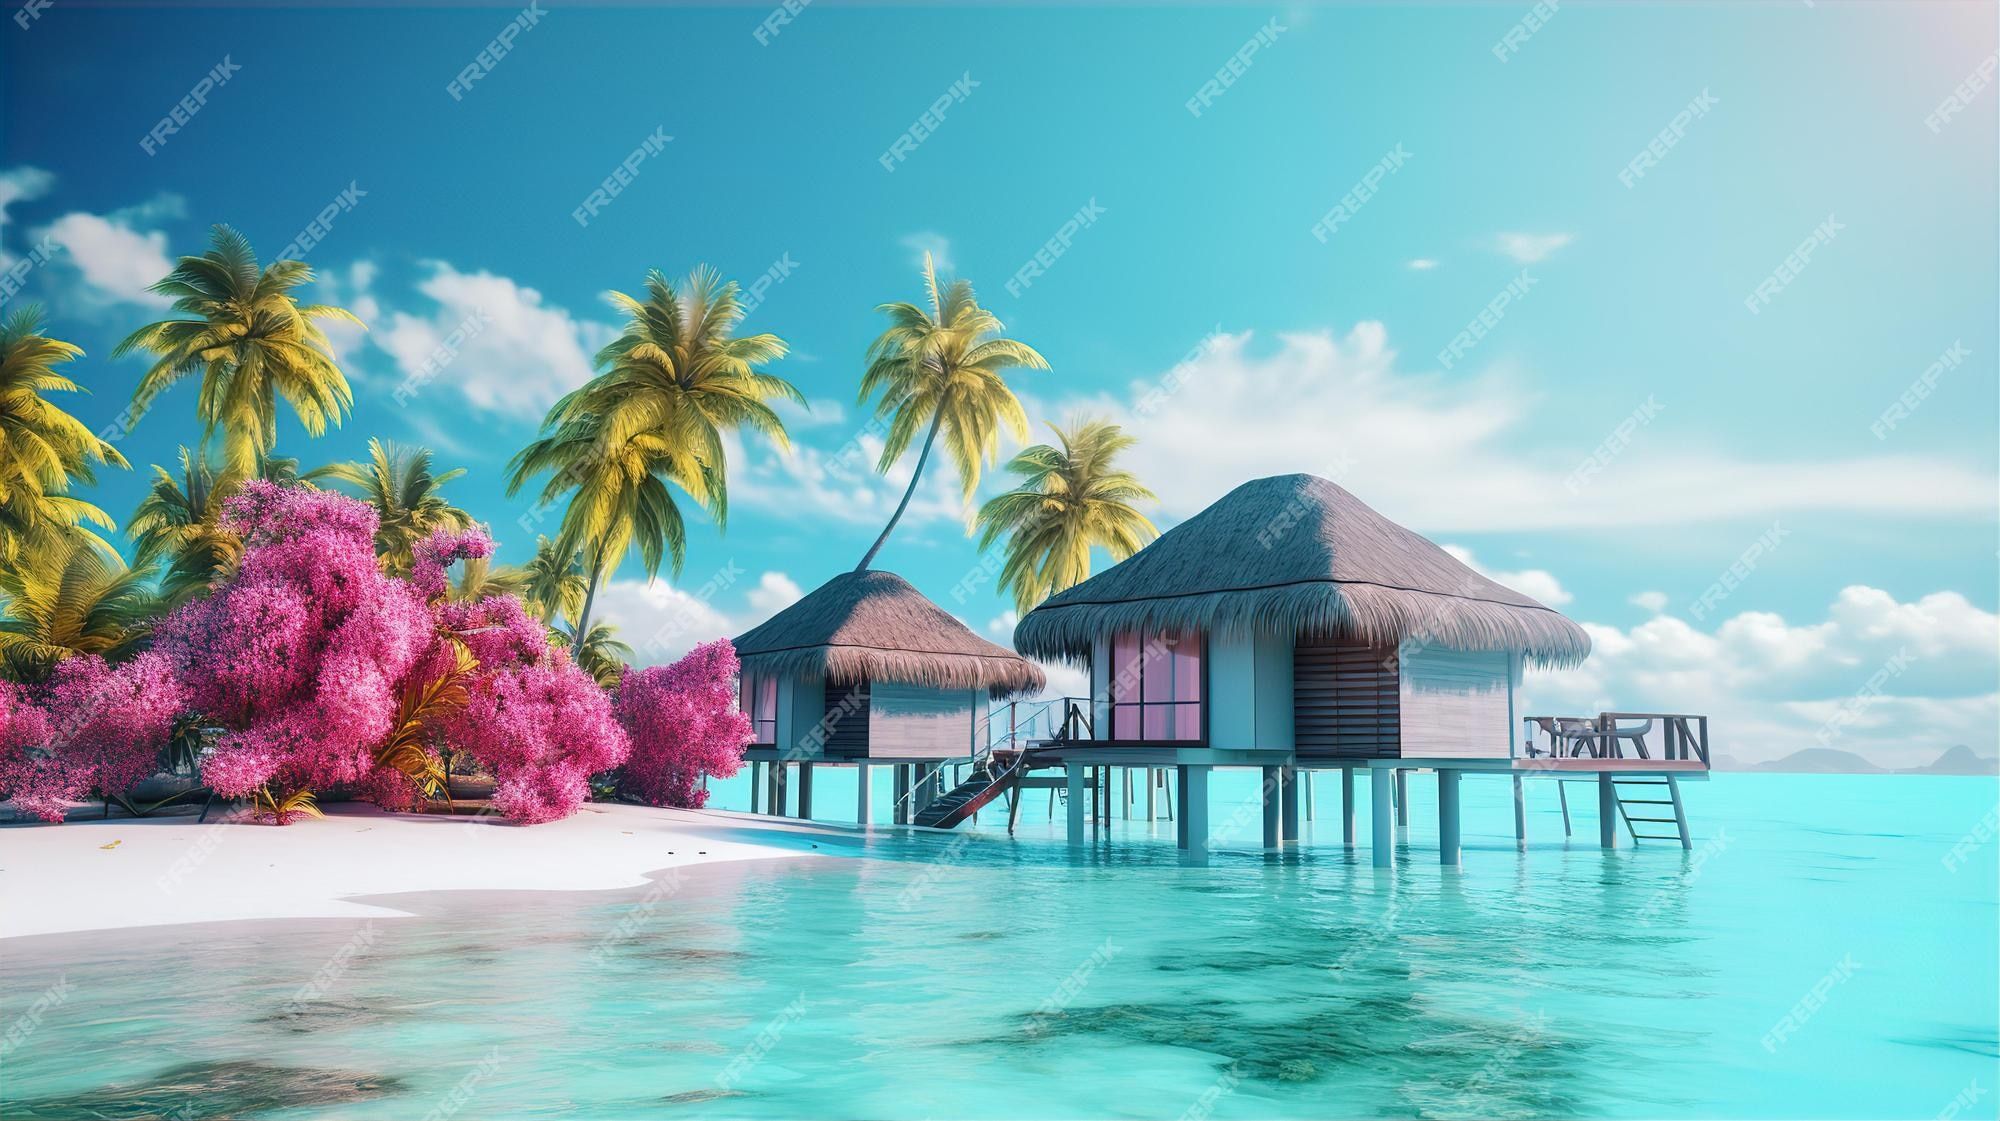  Karibik Hintergrundbild 2000x1121. Paradise beach aesthetic resort sommerurlaubsidee am strand tropisches sommerurlaubskonzept